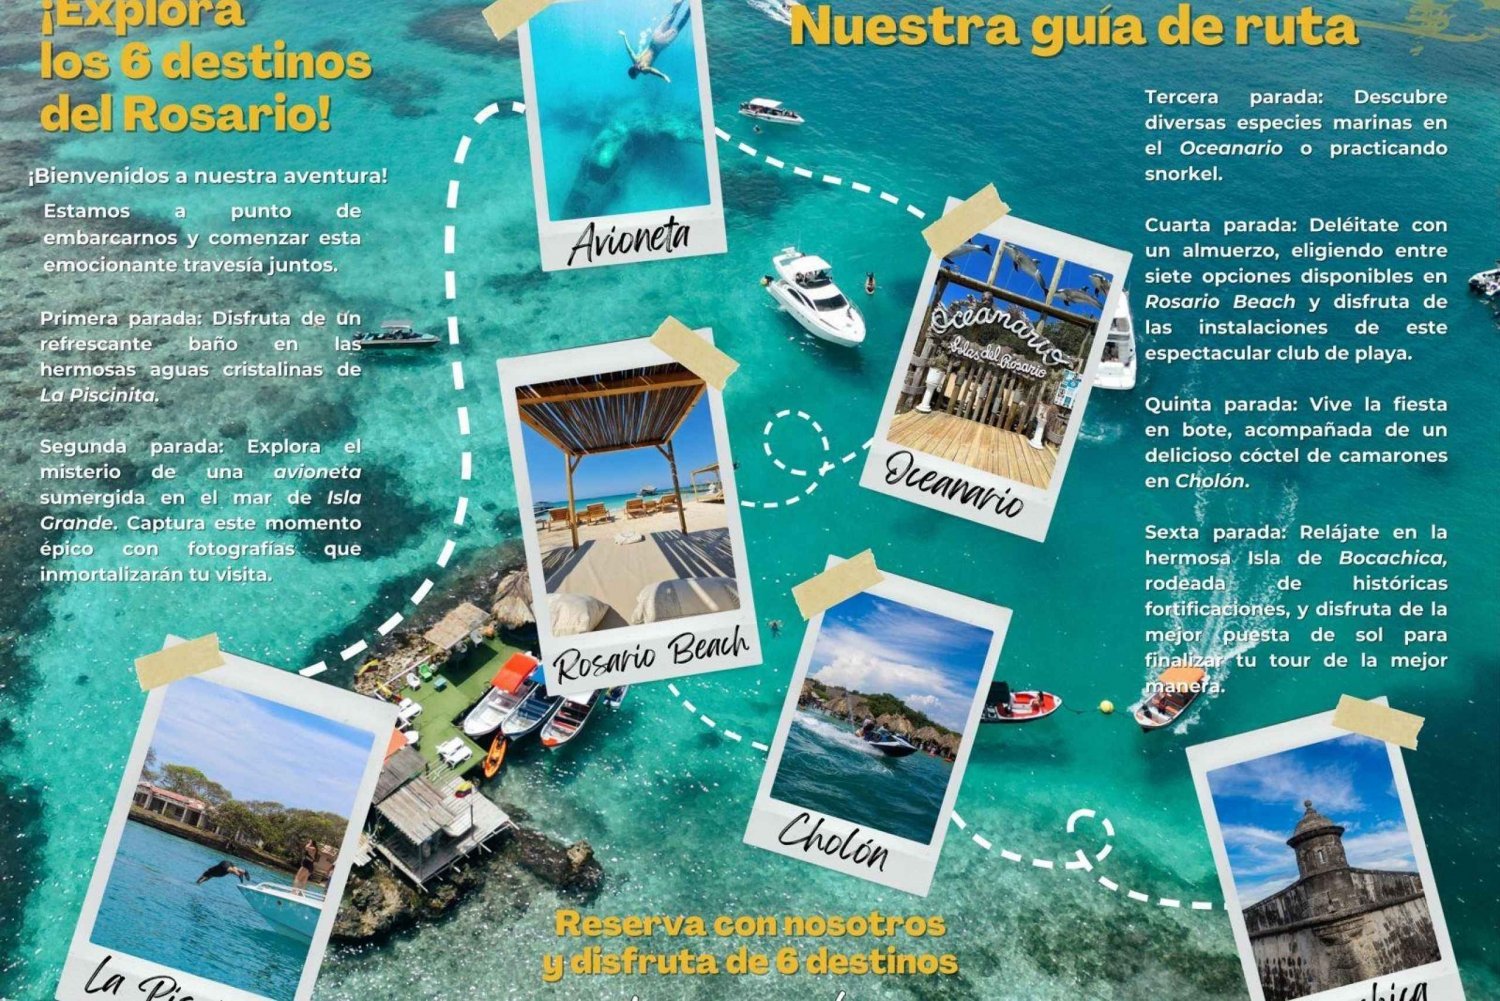 Tour 6 Destinations Rosario Islands